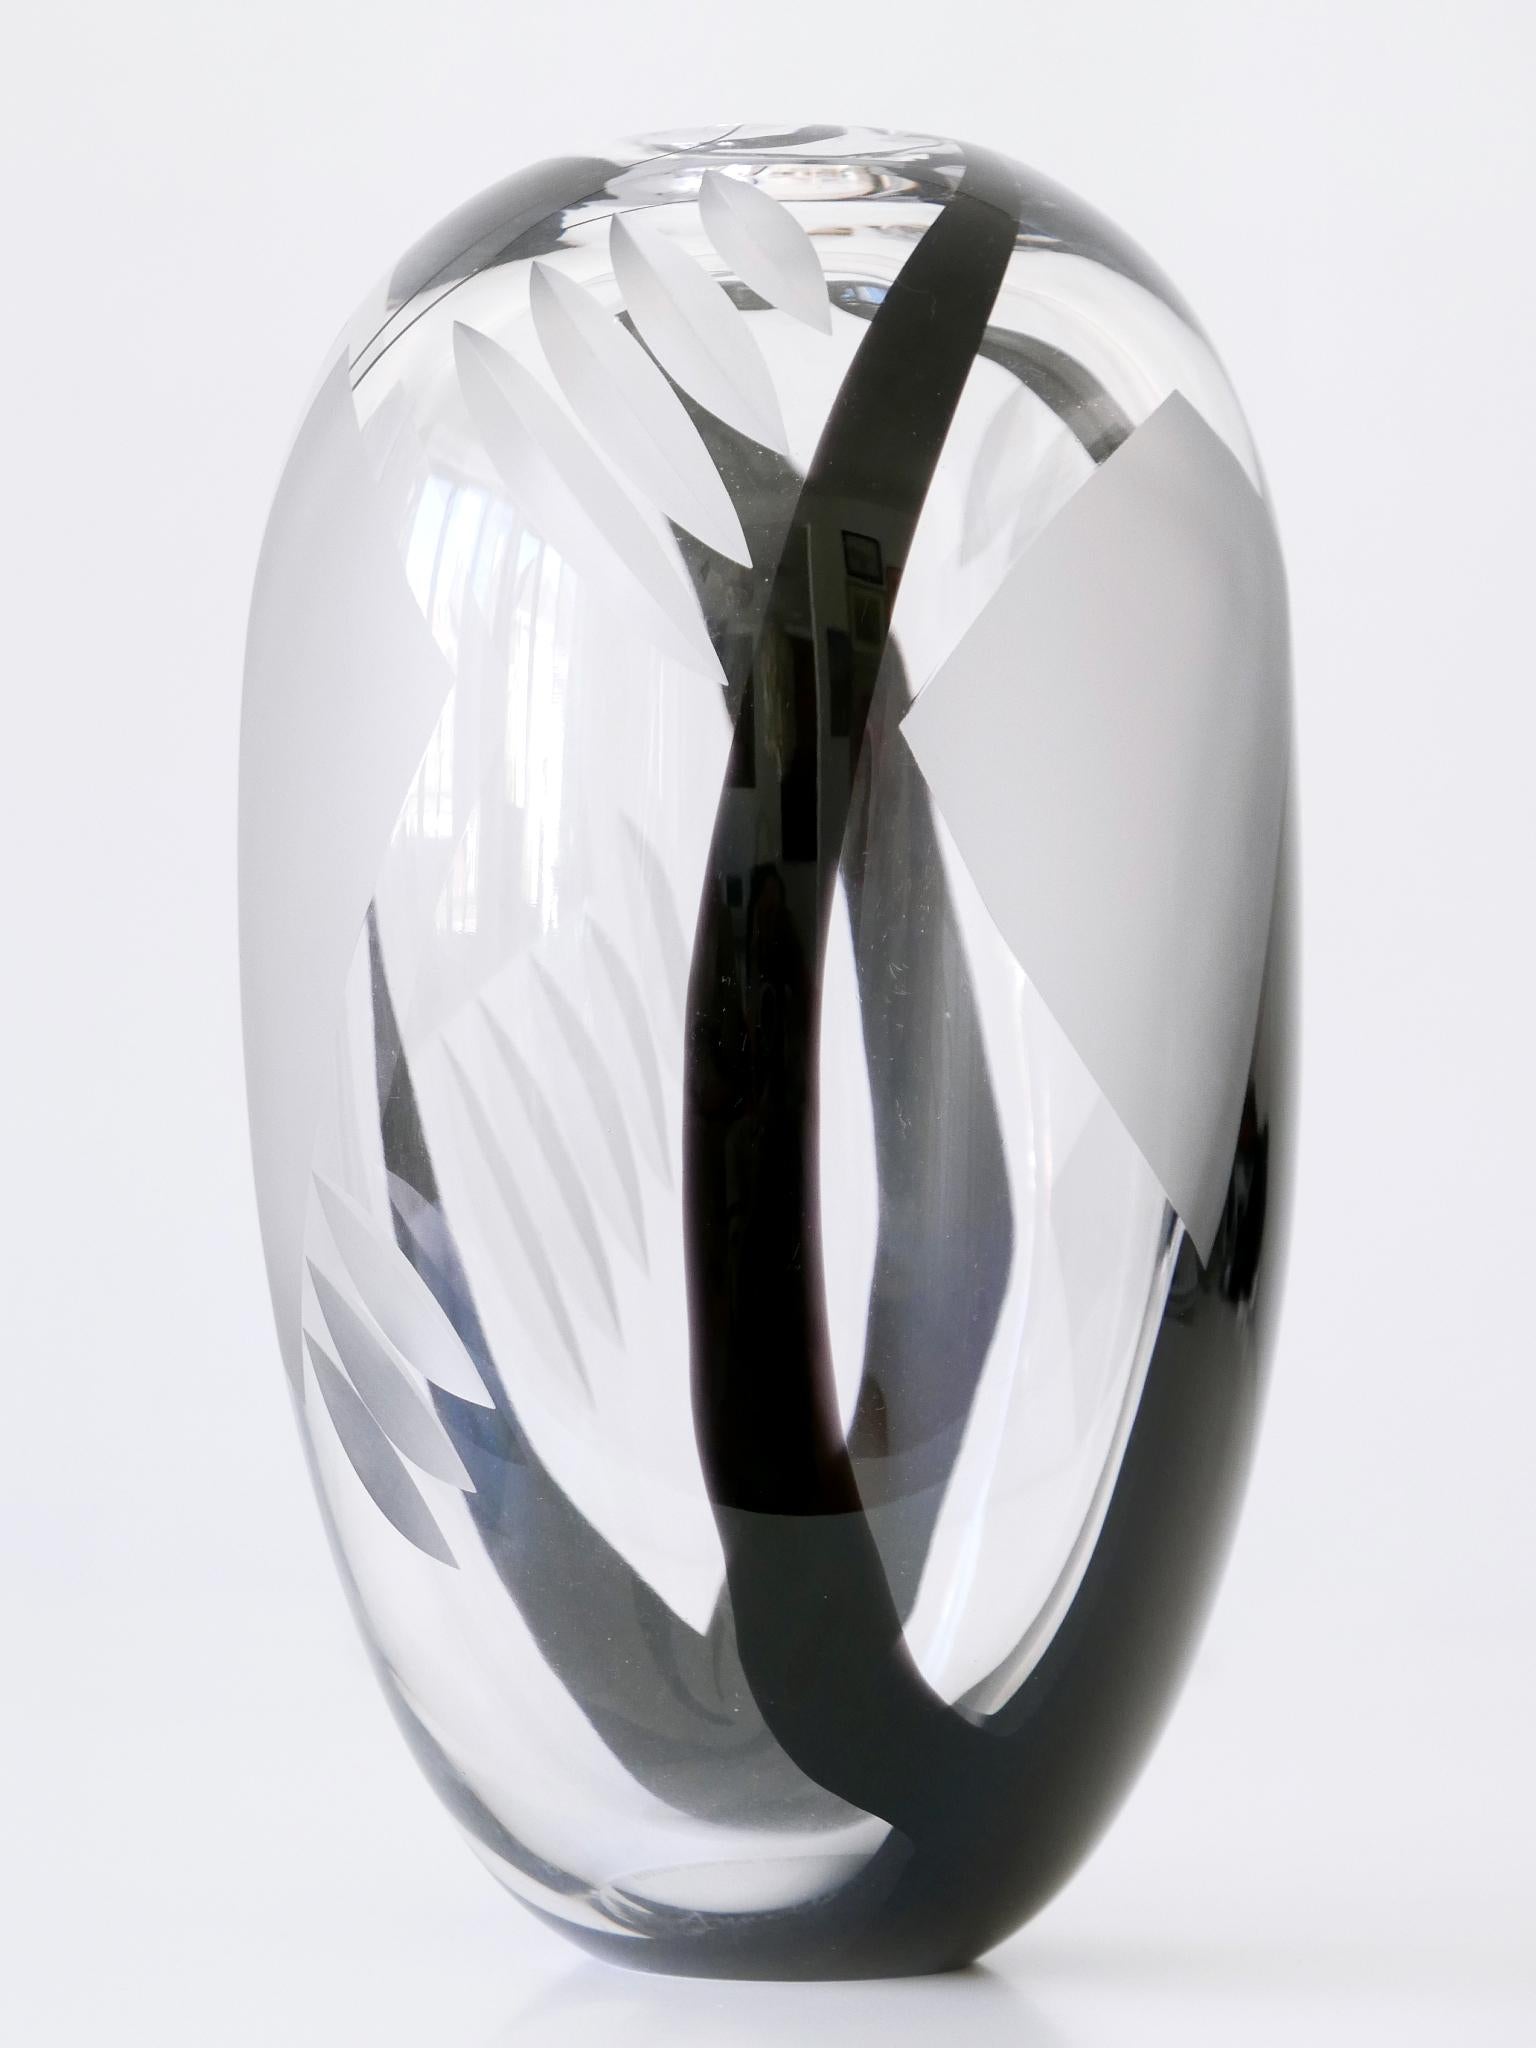 Unique Art Glass Vase by Anna Ehrer for Kosta Boda Sweden 1992 Signed For Sale 4